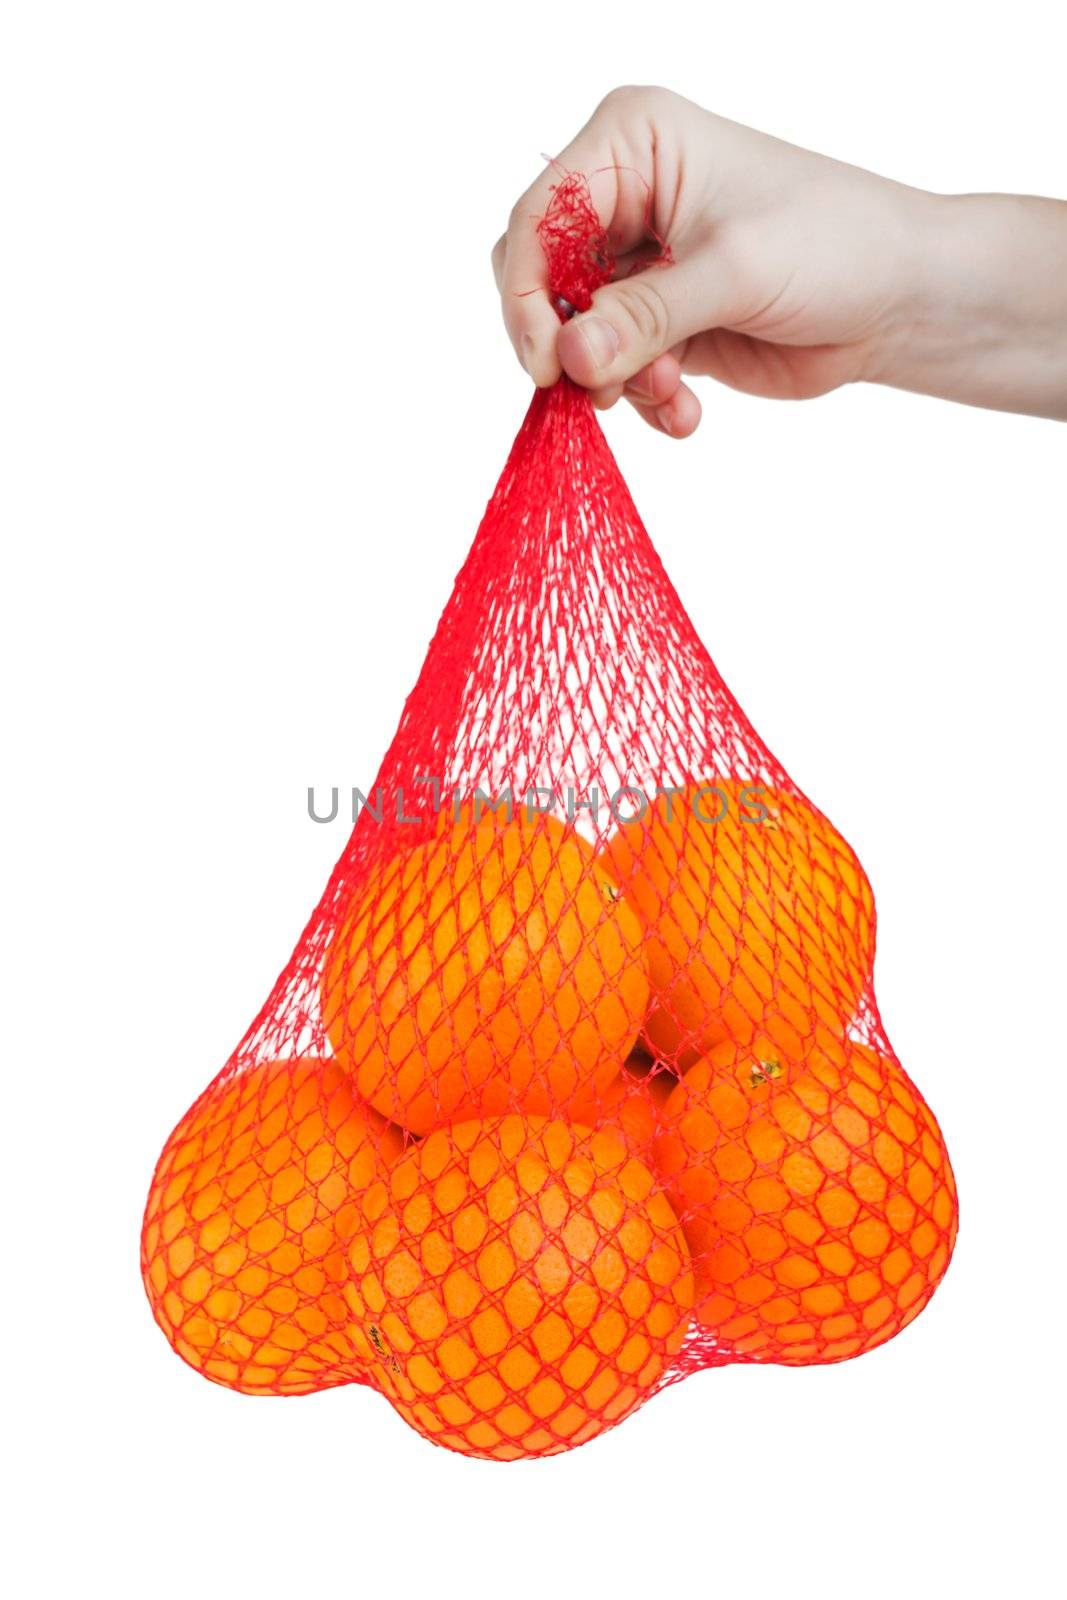 Hand holding healthy eating orange fruit food bag